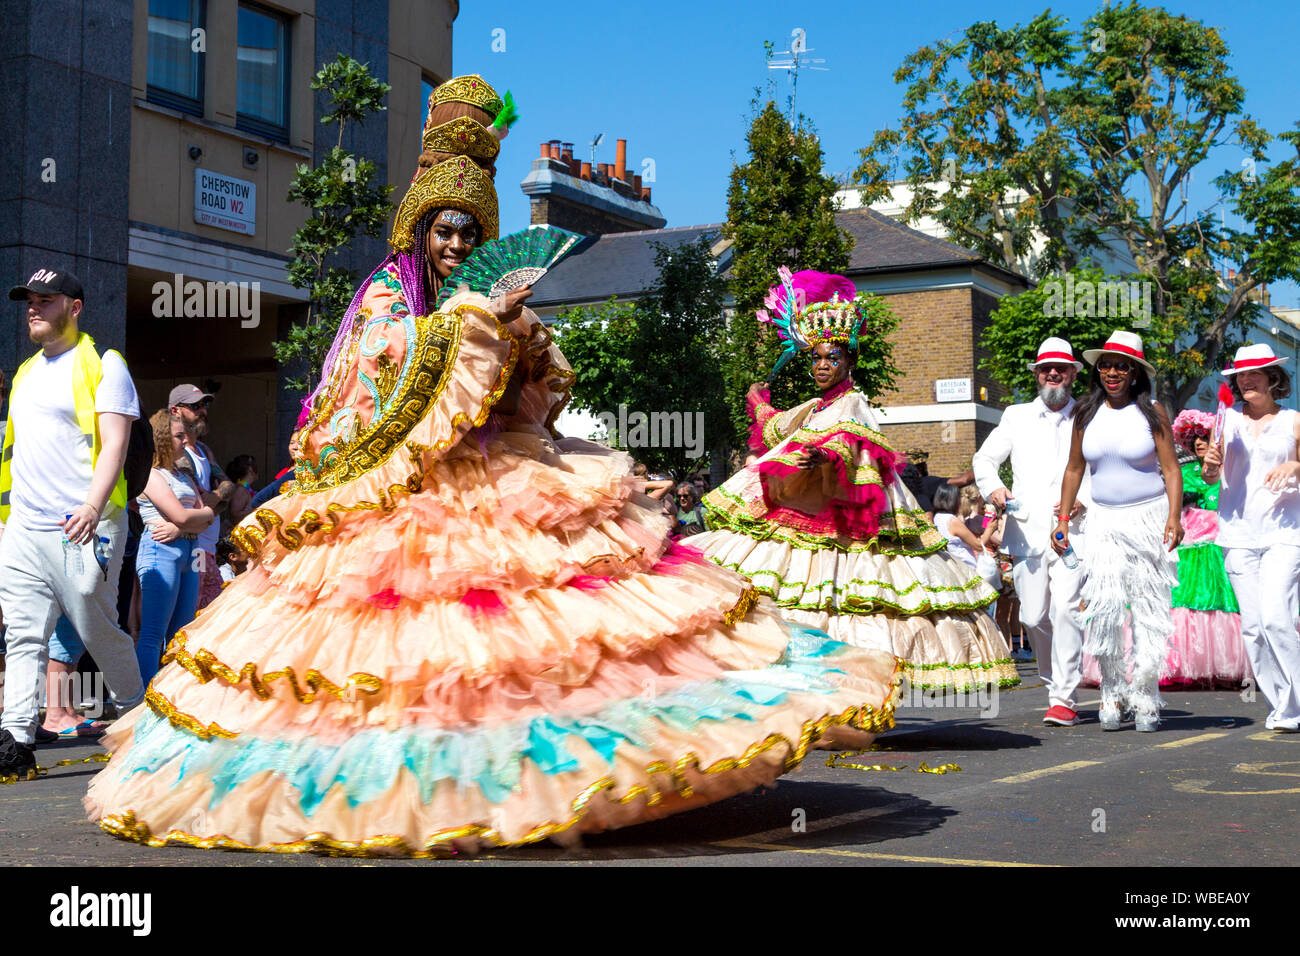 26 août 2019 - Femme dans une longue robe à crinoline et coiffure orné au carnaval de Notting Hill sur une maison de banque lundi, Londres, UK Banque D'Images